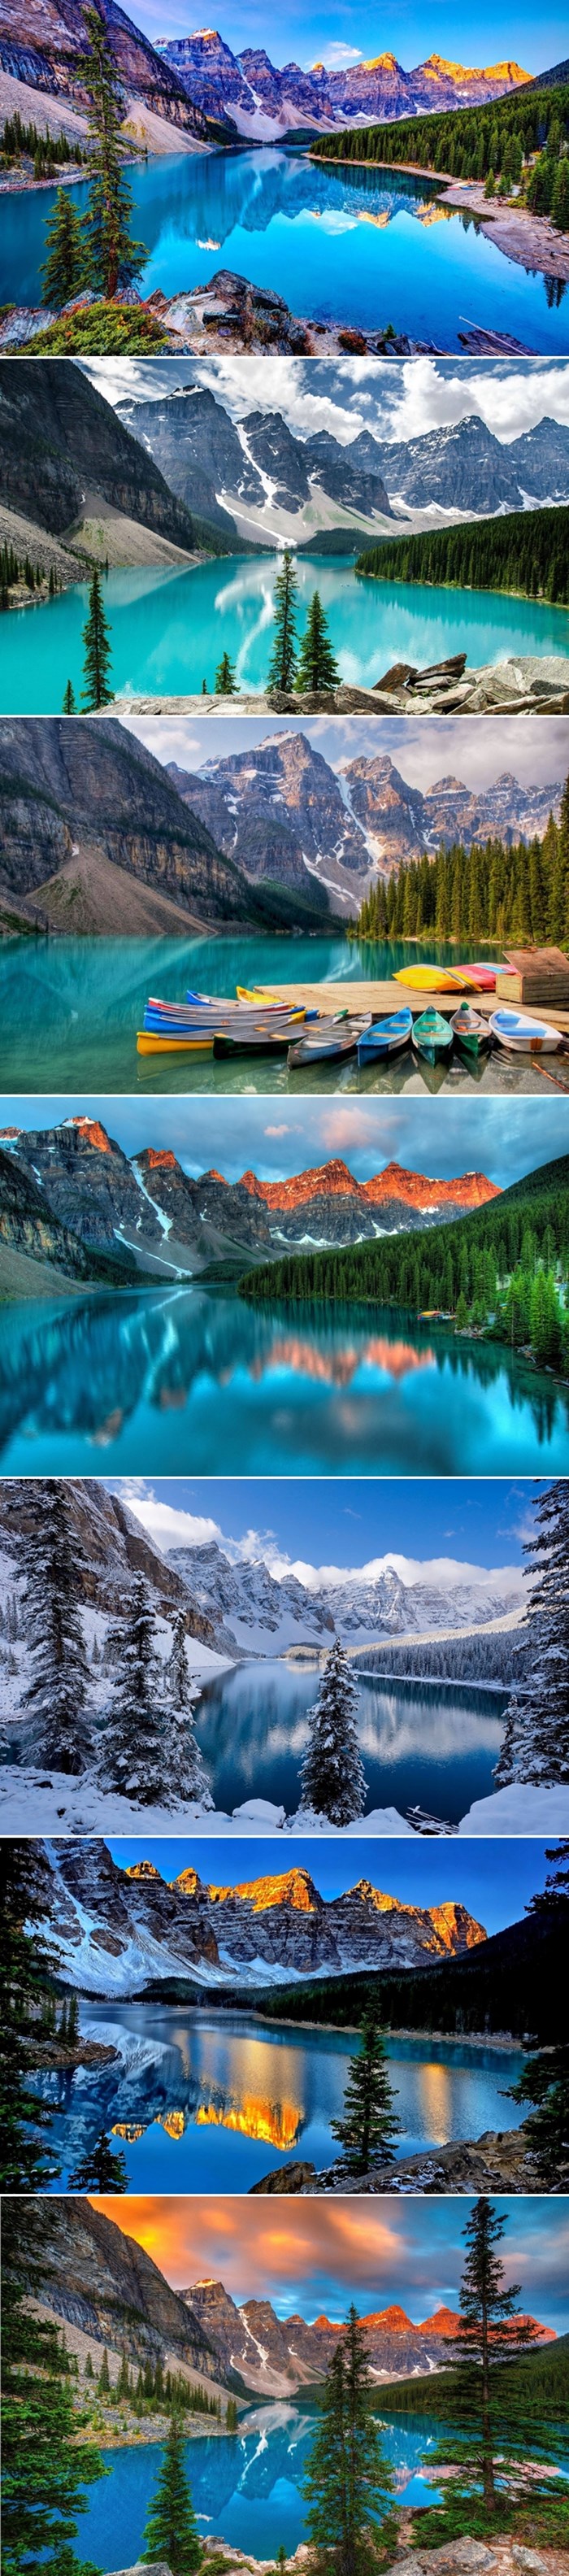 Galerija: Smirena ljepota kanadskog jezera Moraine